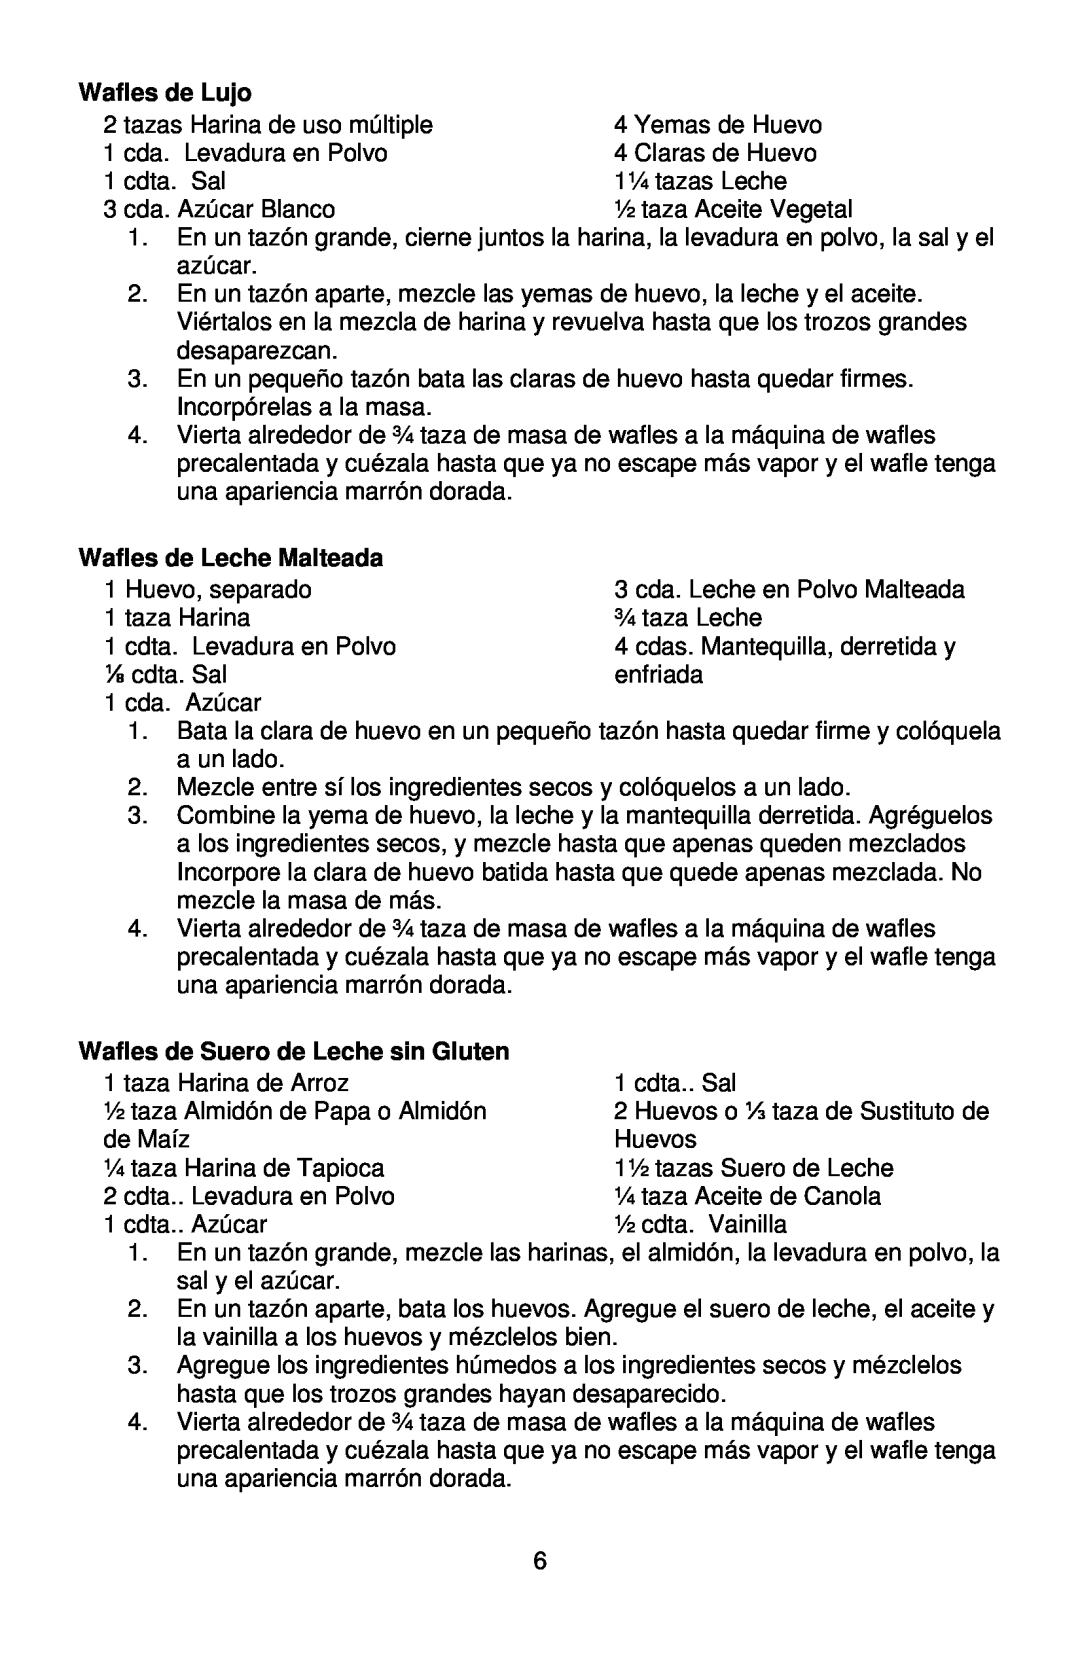 West Bend 6201 instruction manual Wafles de Lujo, Wafles de Leche Malteada, Wafles de Suero de Leche sin Gluten 